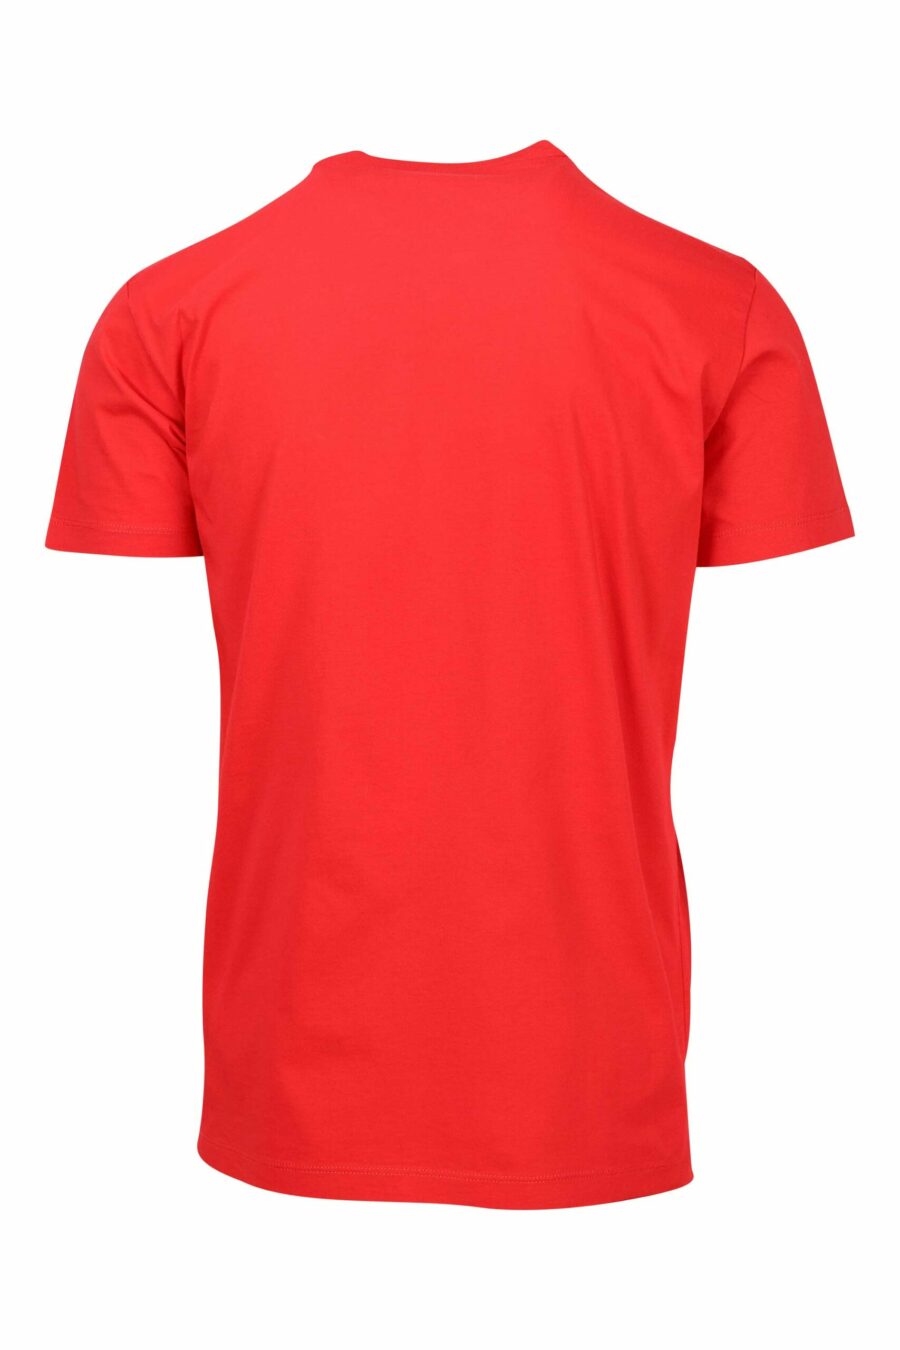 T-shirt rouge avec petit logo "ceresio 9" - 8052134197134 1 à l'échelle